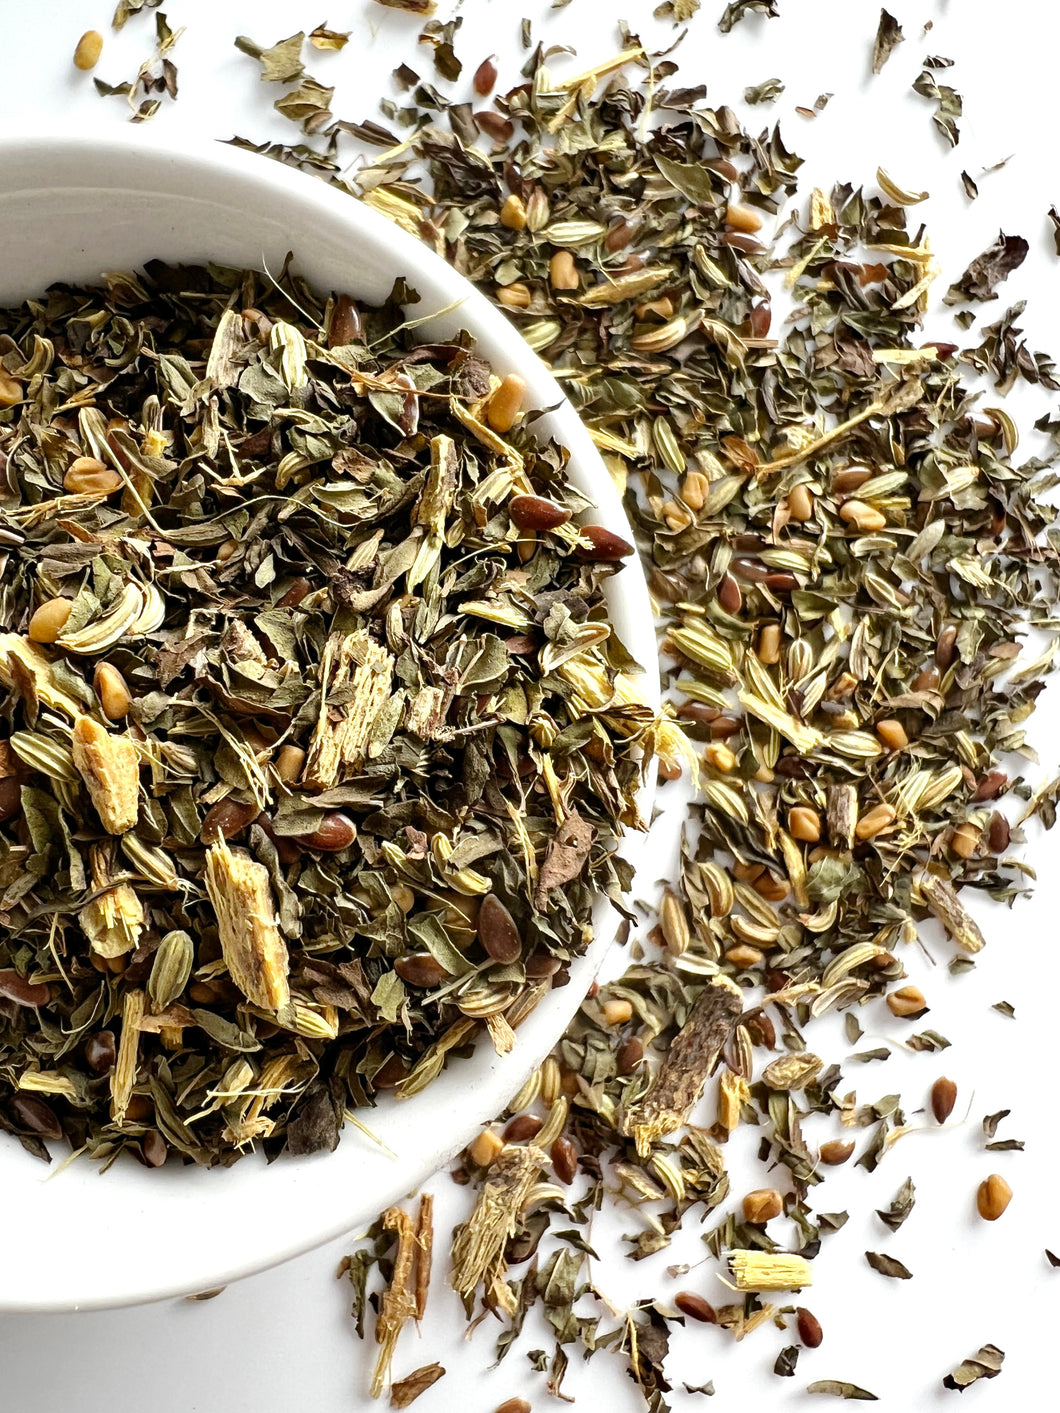 Banshee - sore throat soother herbal loose leaf tea